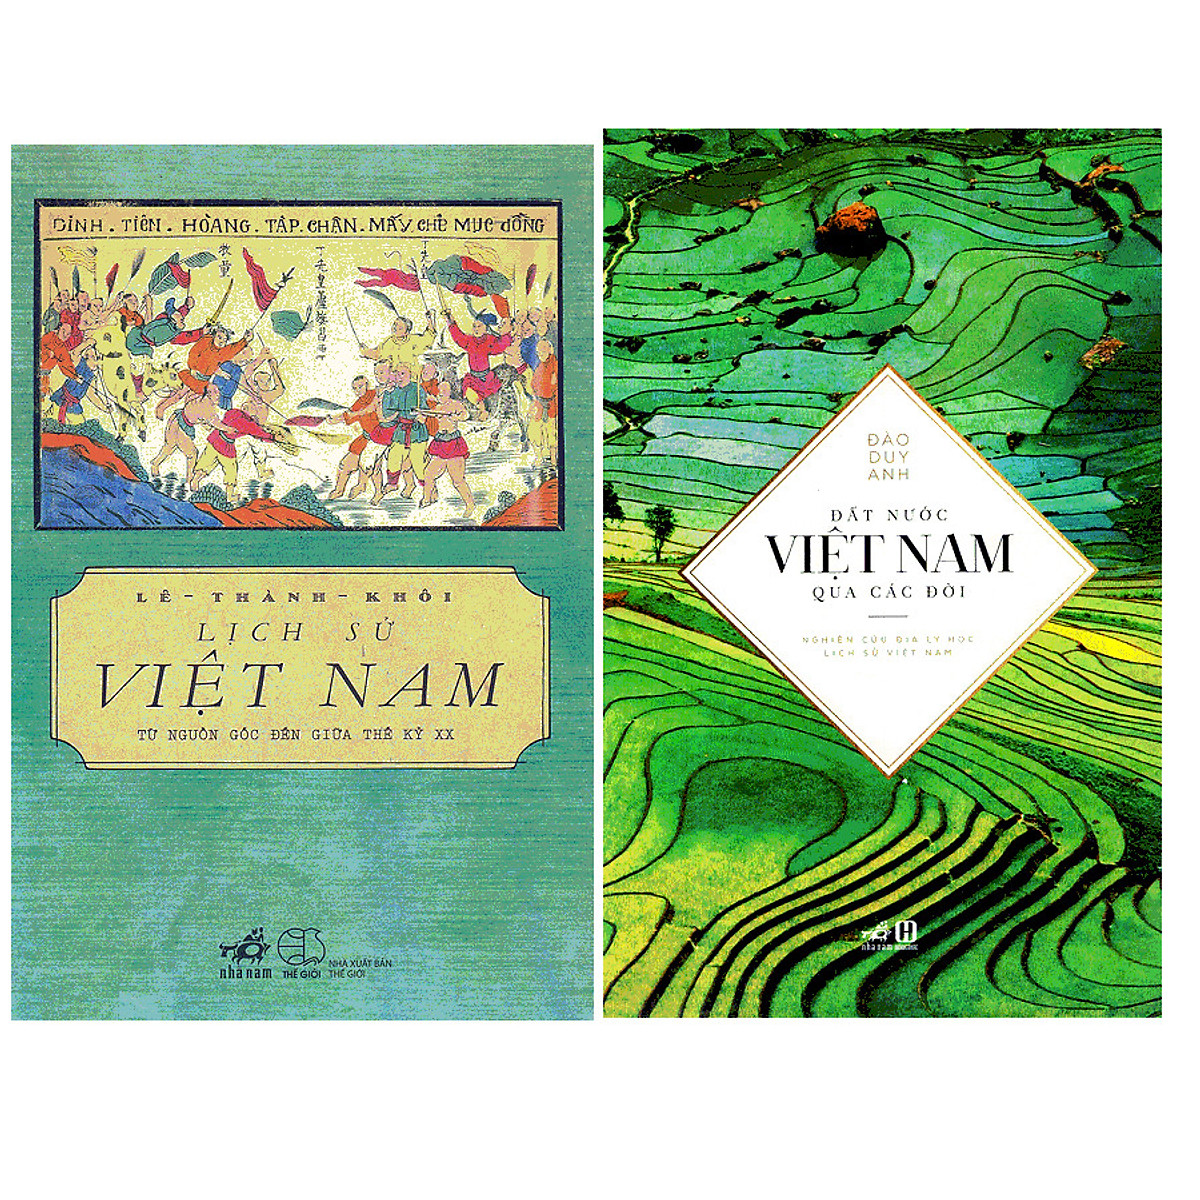 Combo Lịch Sử Việt Nam Từ Nguồn Gốc Đến Giữa Thế Kỉ XX + Đất Nước Việt Nam Qua Các Đời